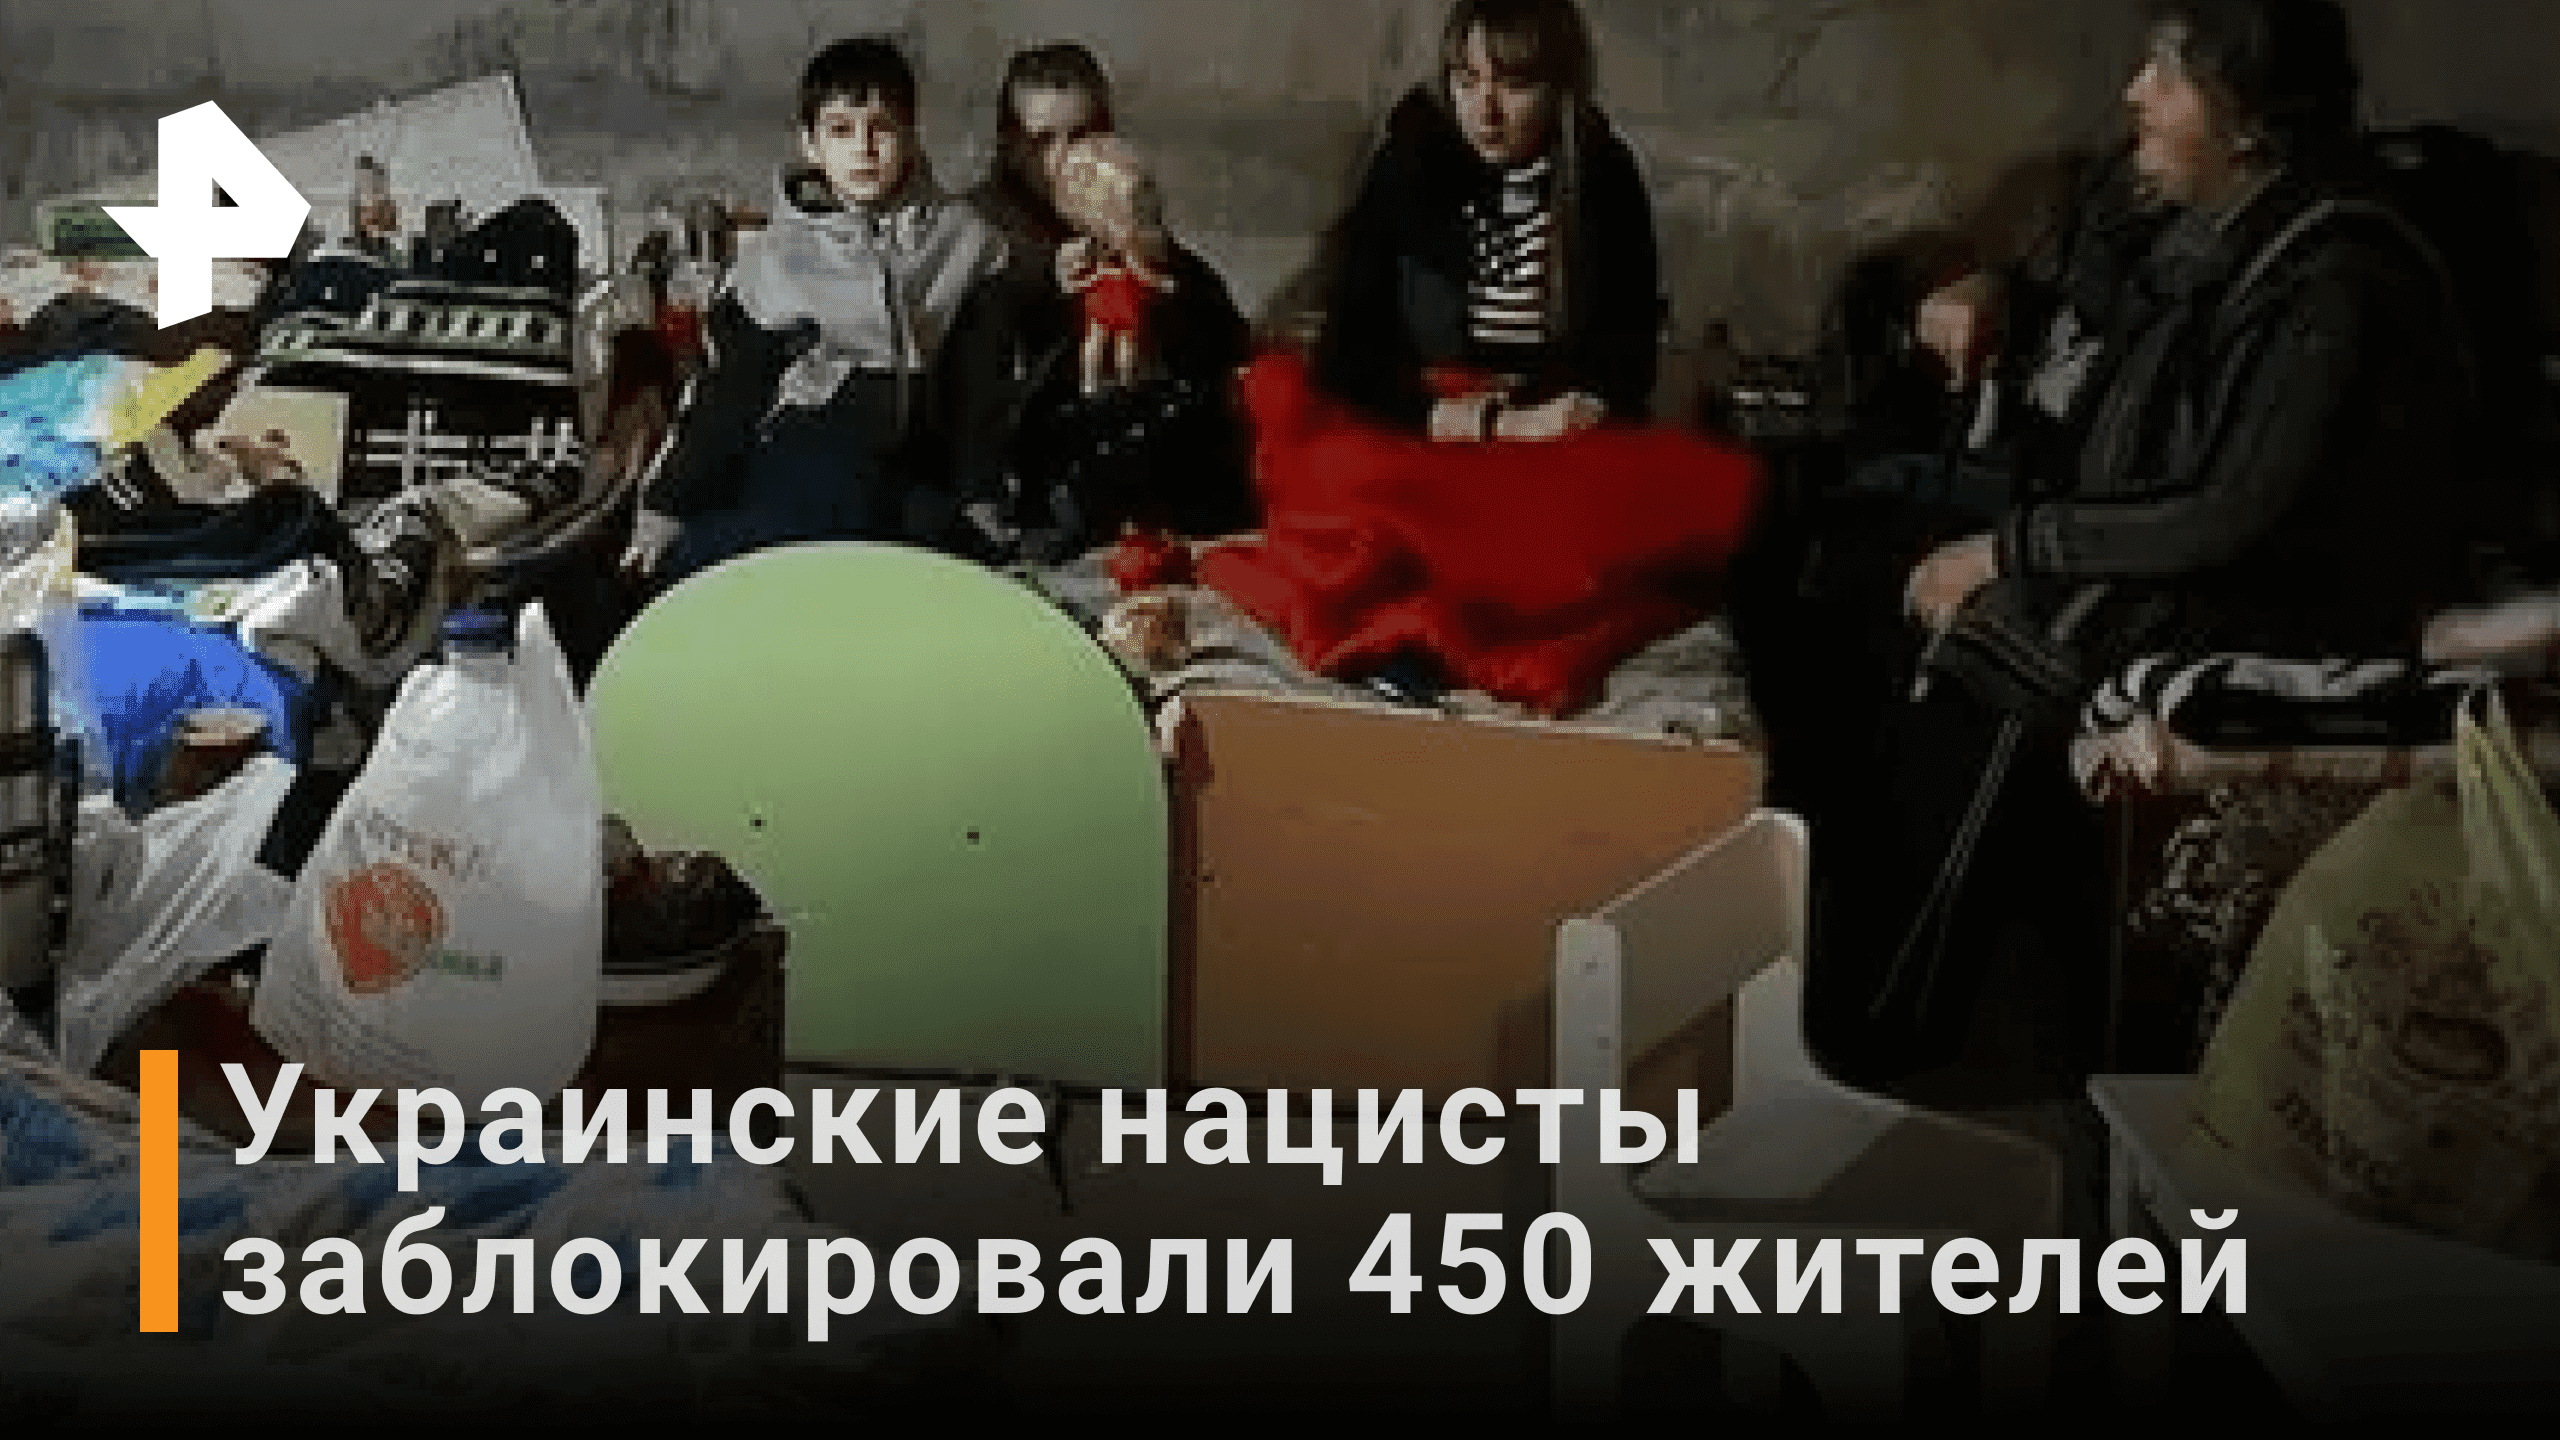 Более 450 мирных жителей удерживают националисты в монастыре в ДНР / РЕН Новости